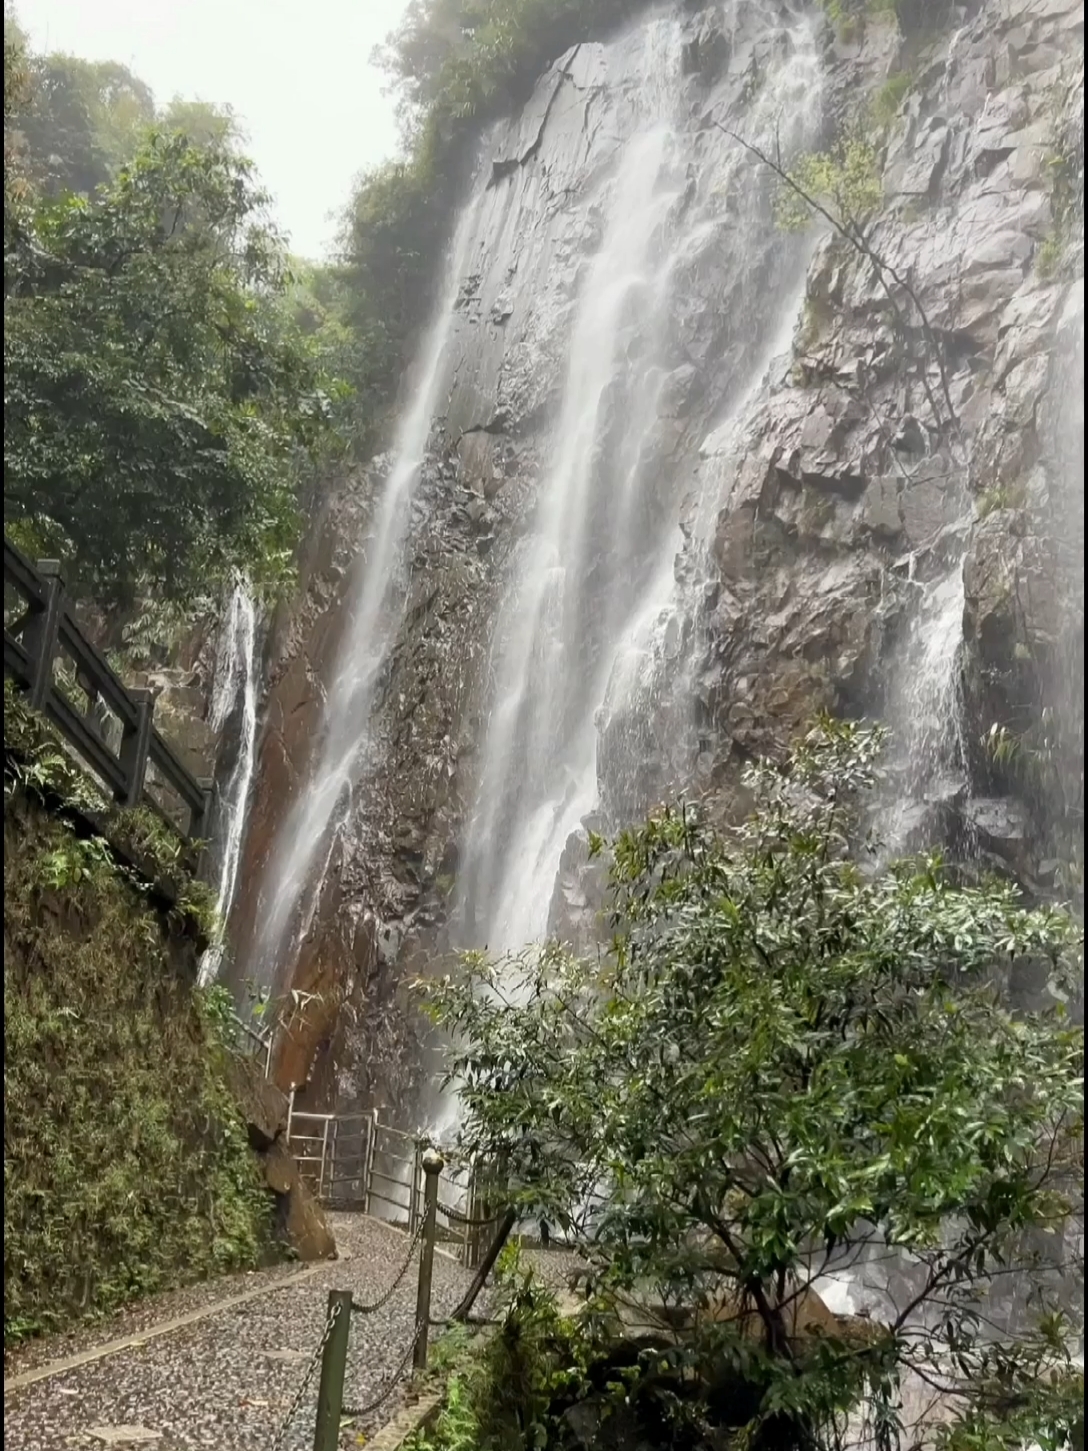 没想到在肇庆四会奇石河隐藏了一个这么壮观的瀑布